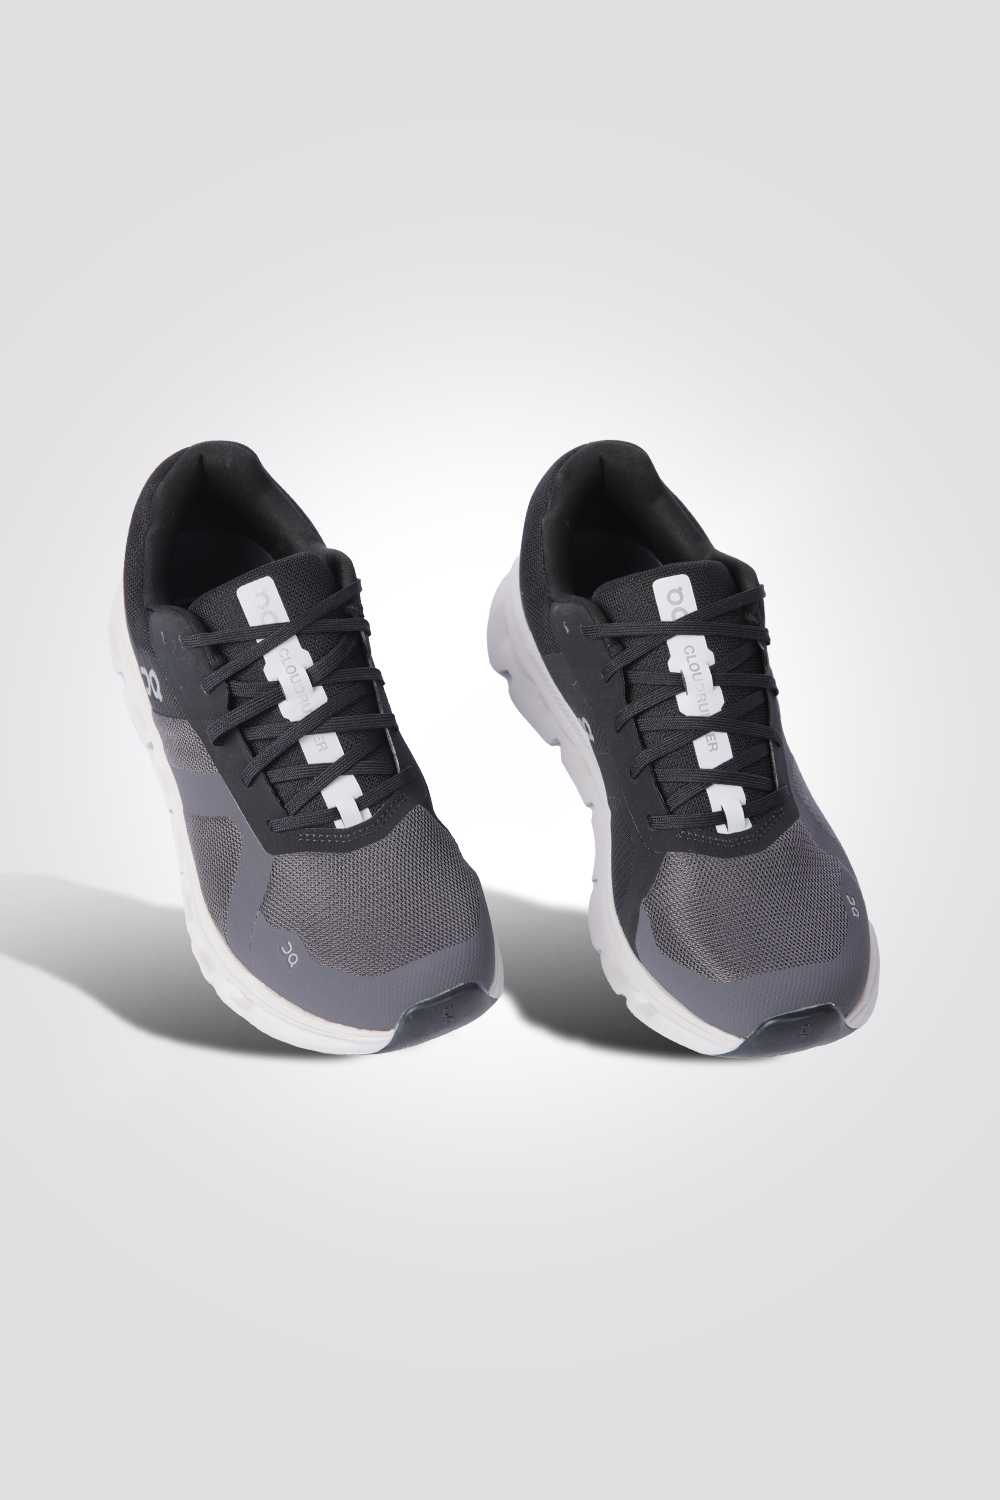 נעלי ספורט לגברים Cloudrunner בצבע שחור ואפור